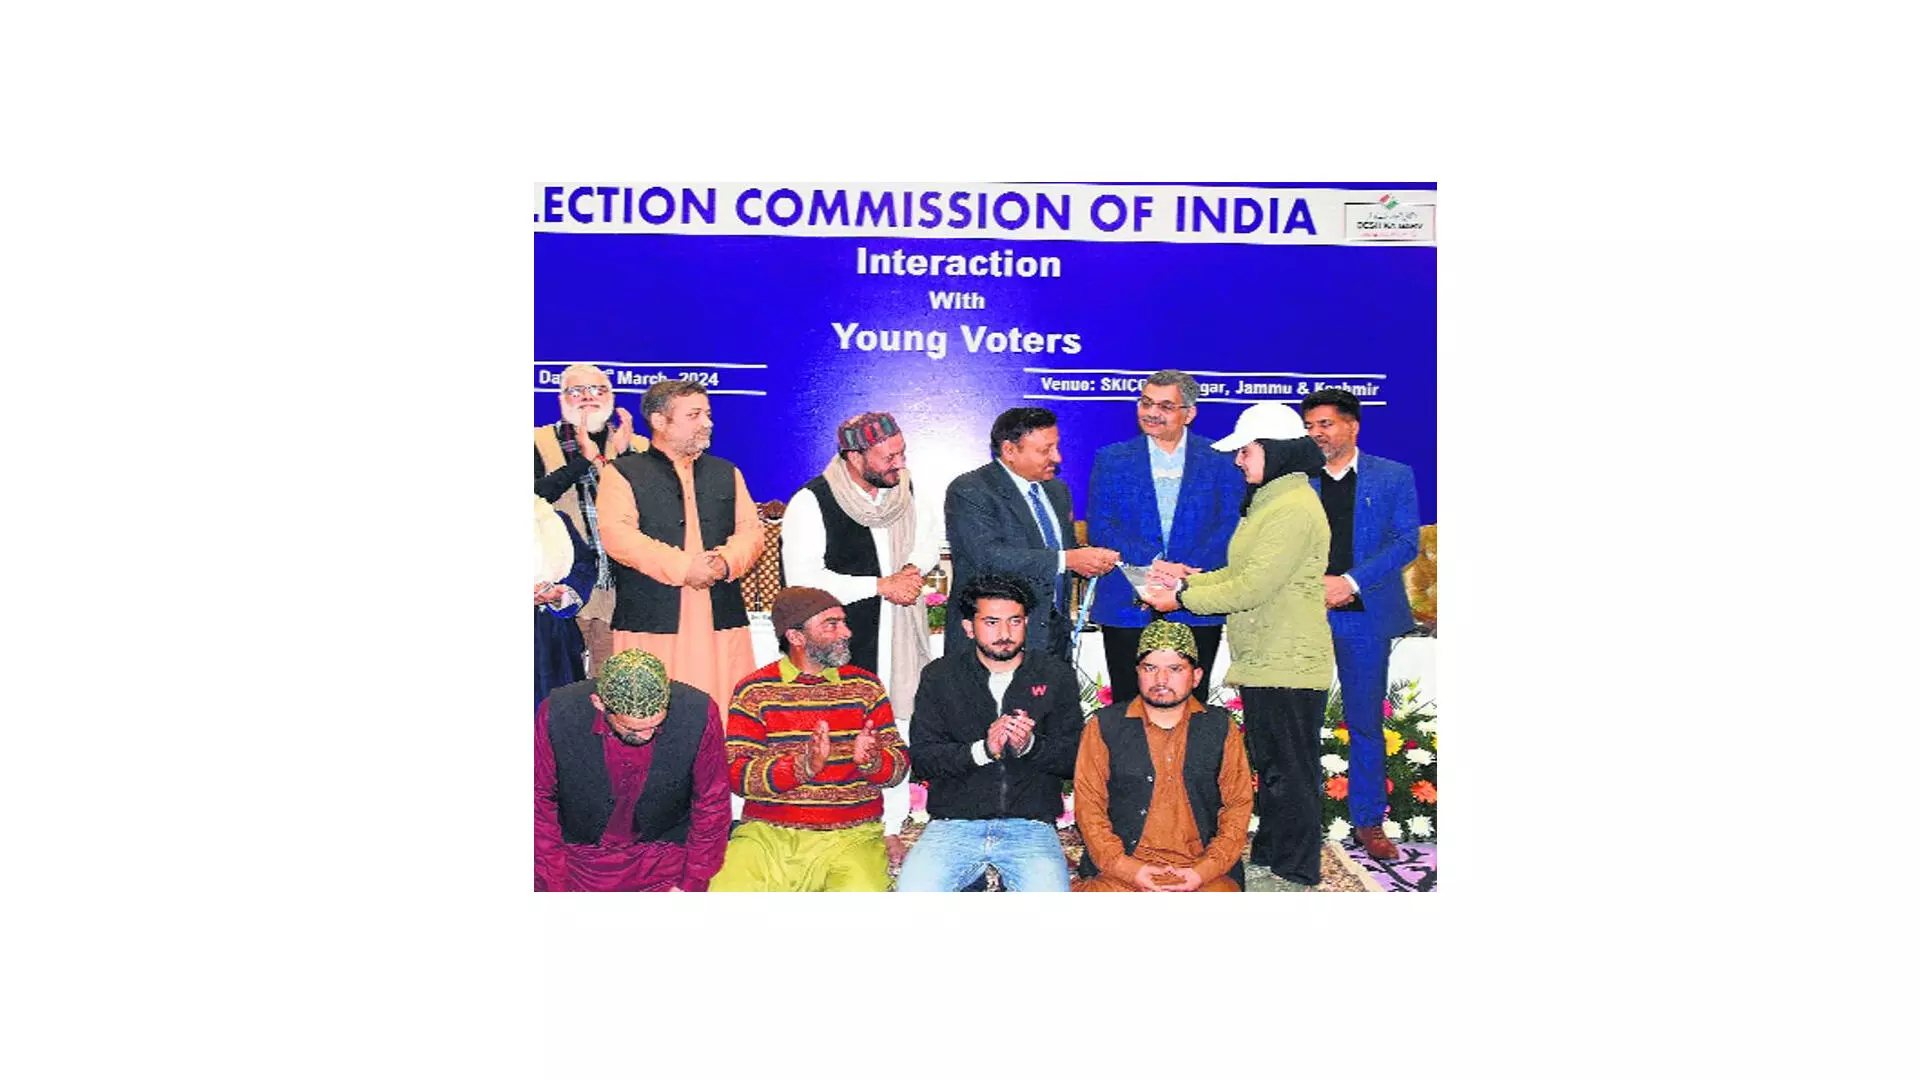 पार्टियां जम्मू-कश्मीर में विधानसभा, लोकसभा चुनाव एक साथ कराने पर जोर दे रही हैं